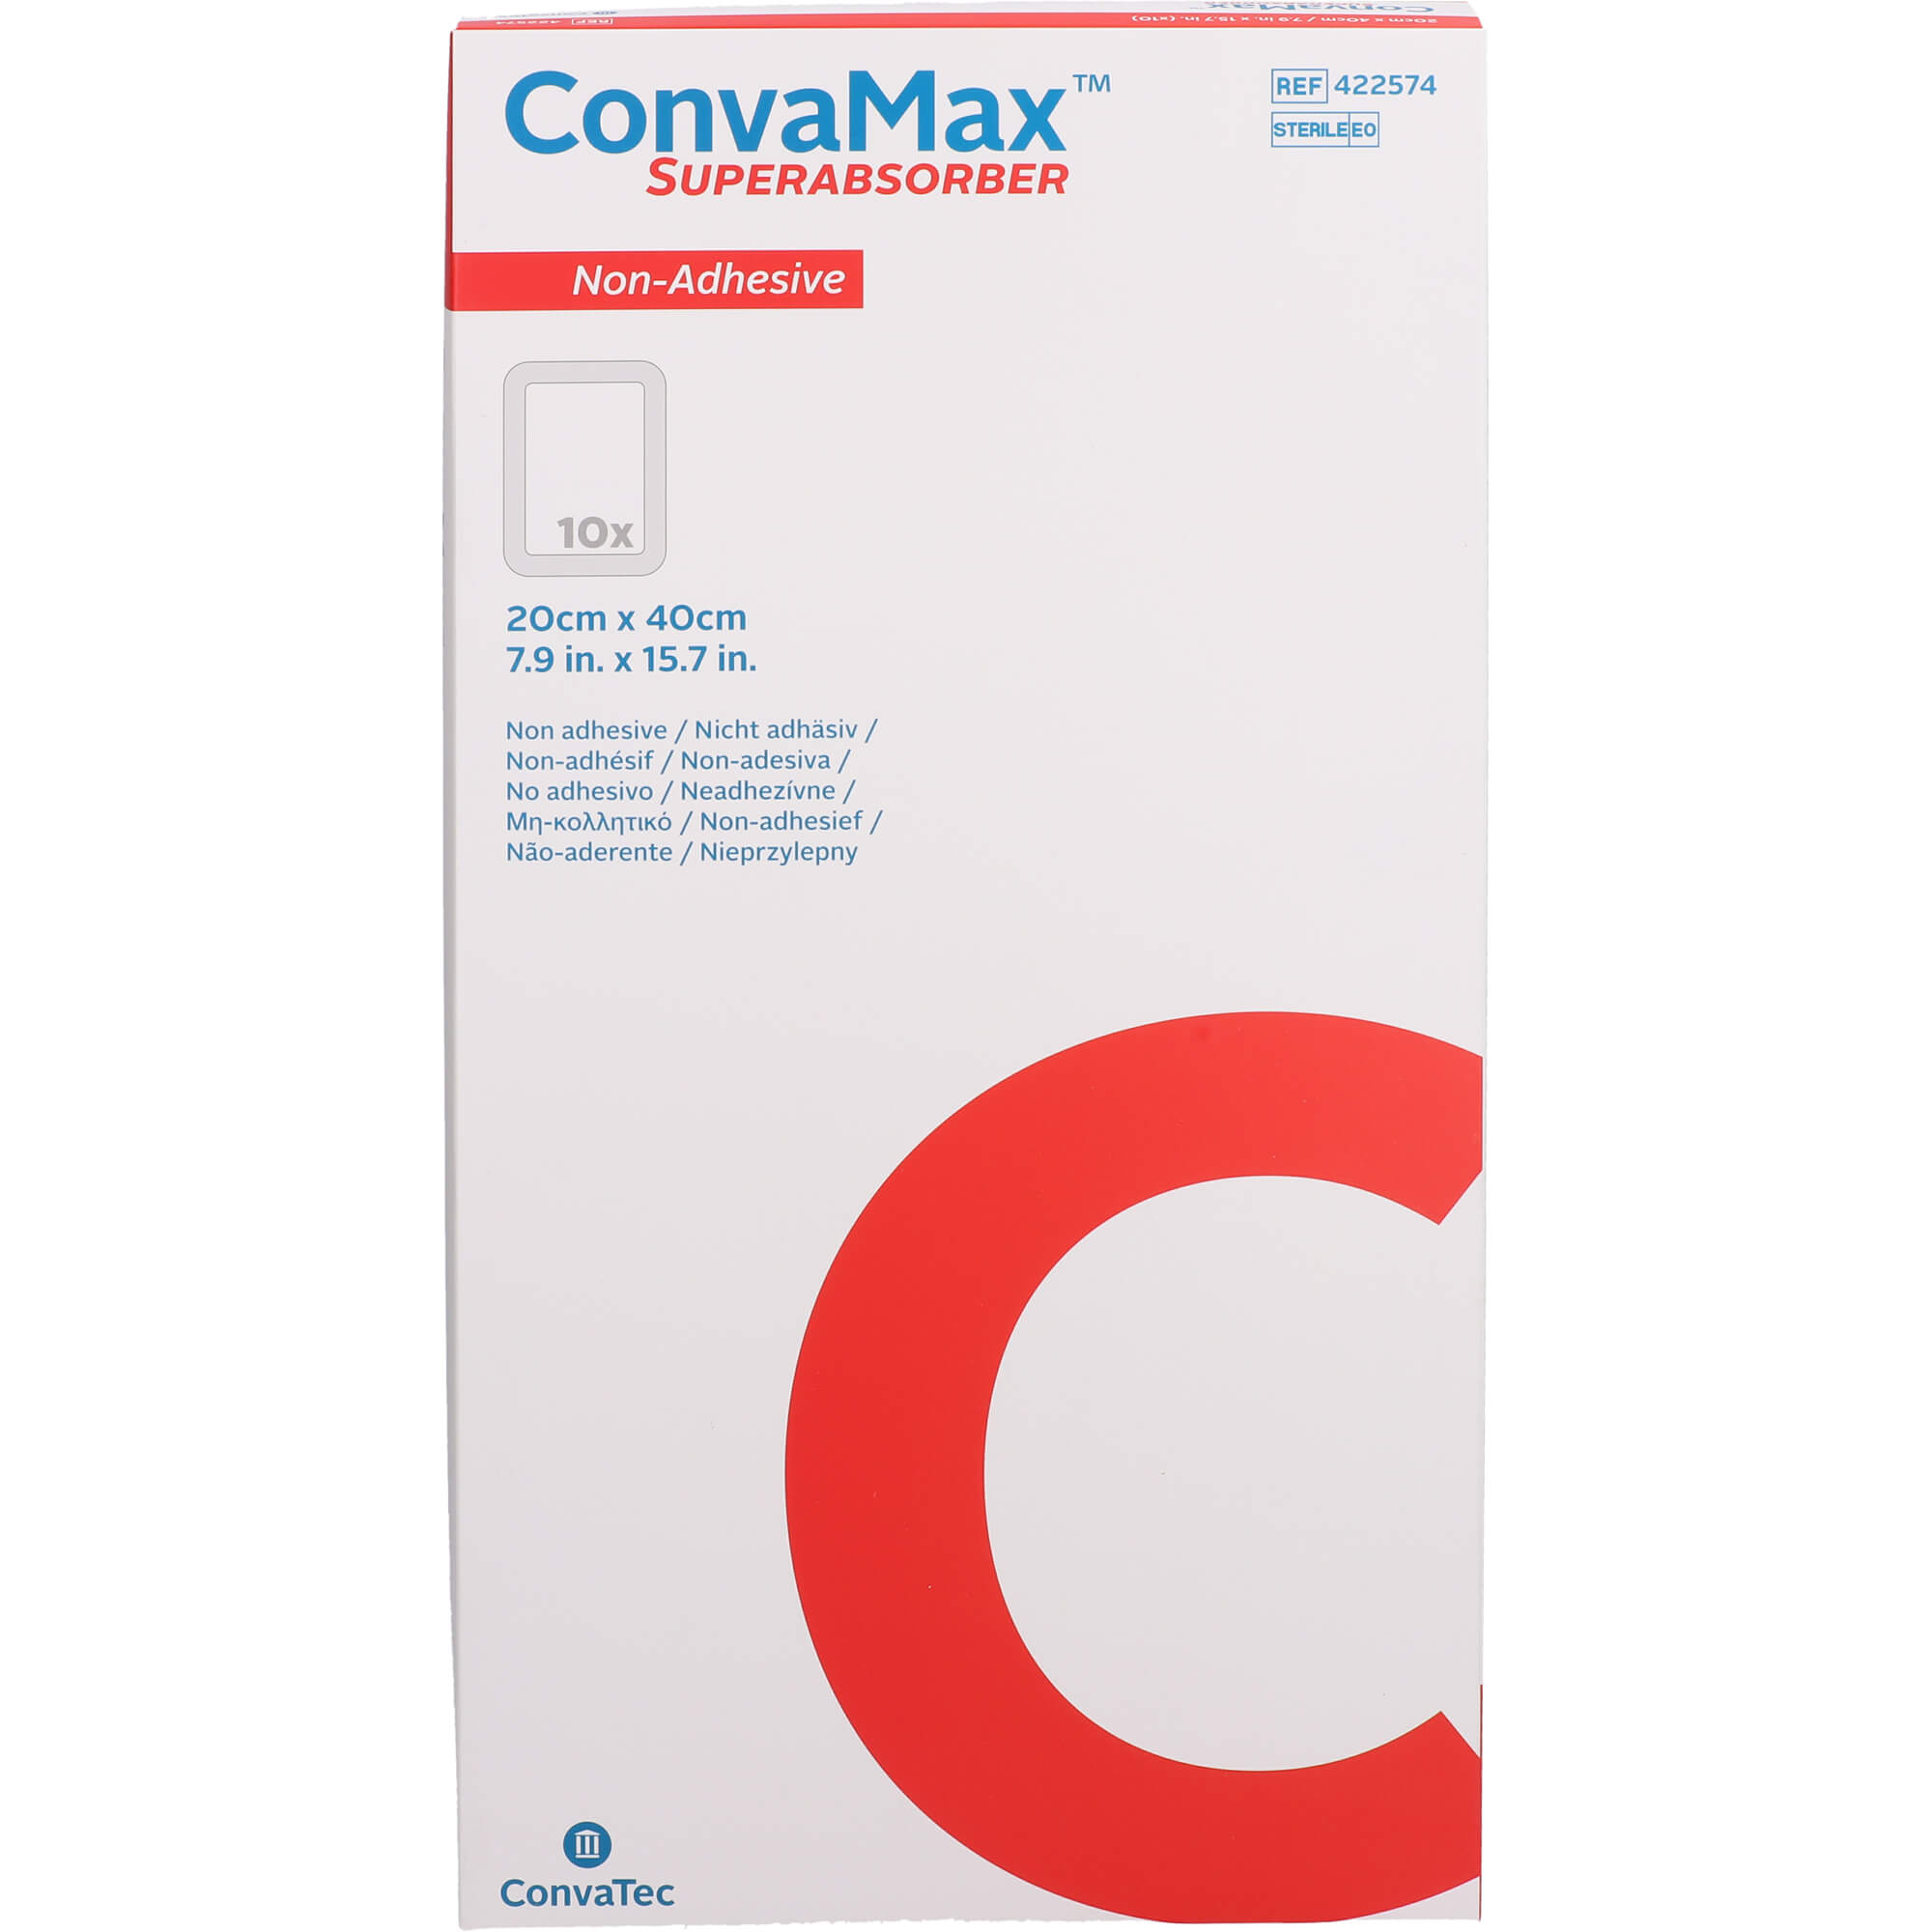 CONVAMAX Superabsorber nicht adhäsiv 20x40 cm